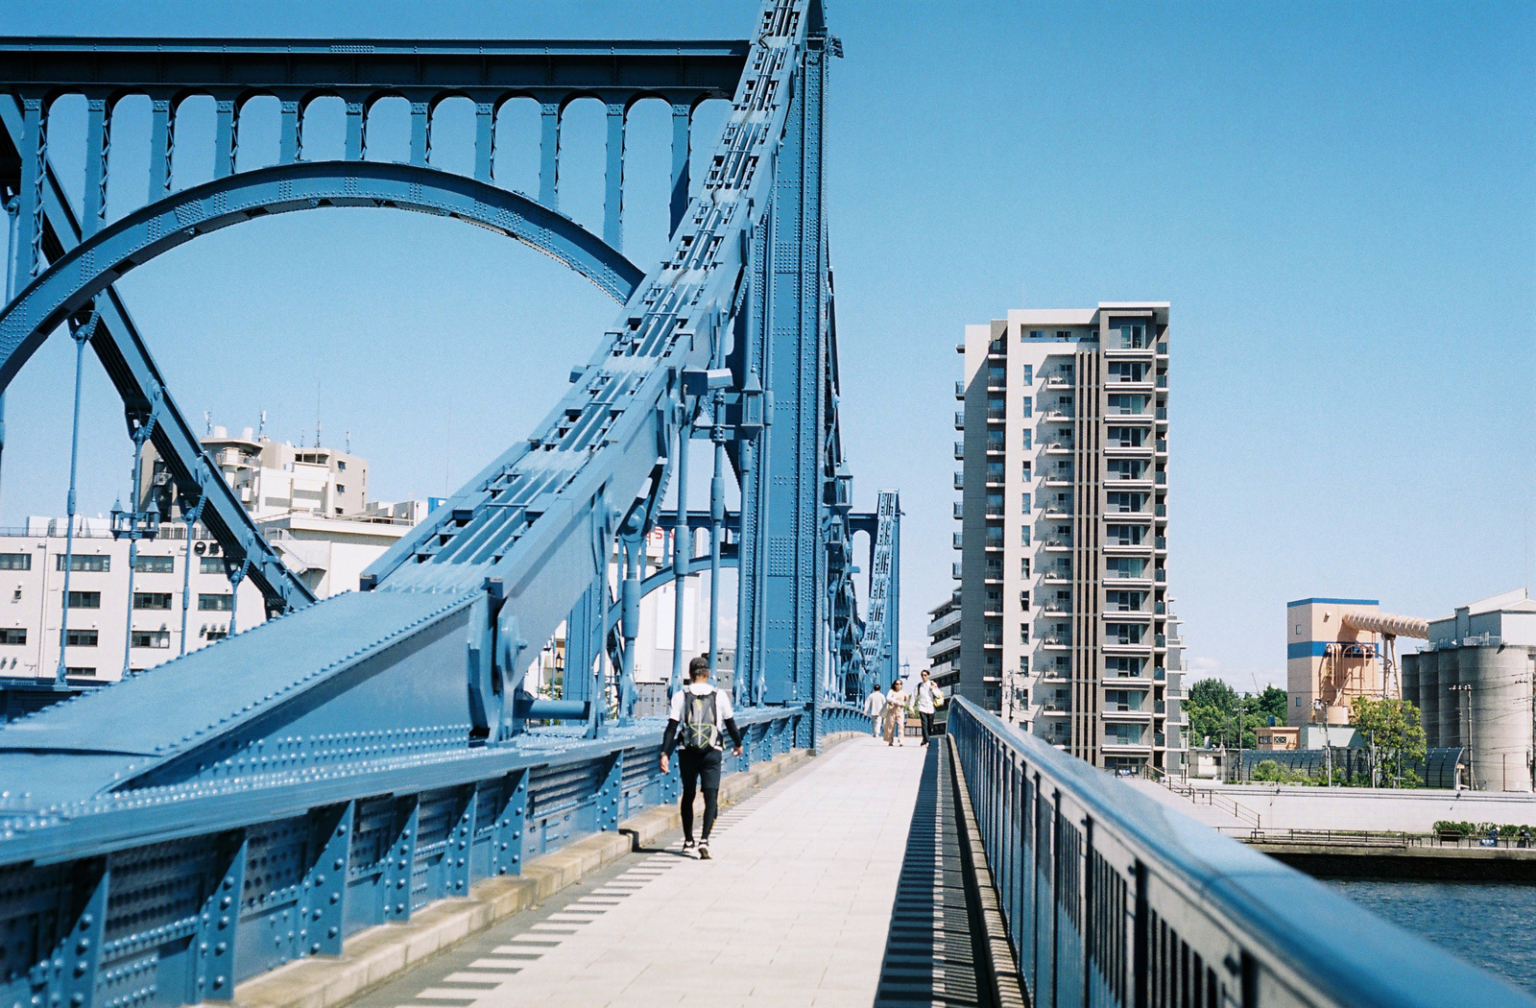 隅田川に架かる真っ青な清洲橋は、時間があると気分転換につい渡りたくなるとても良い橋！